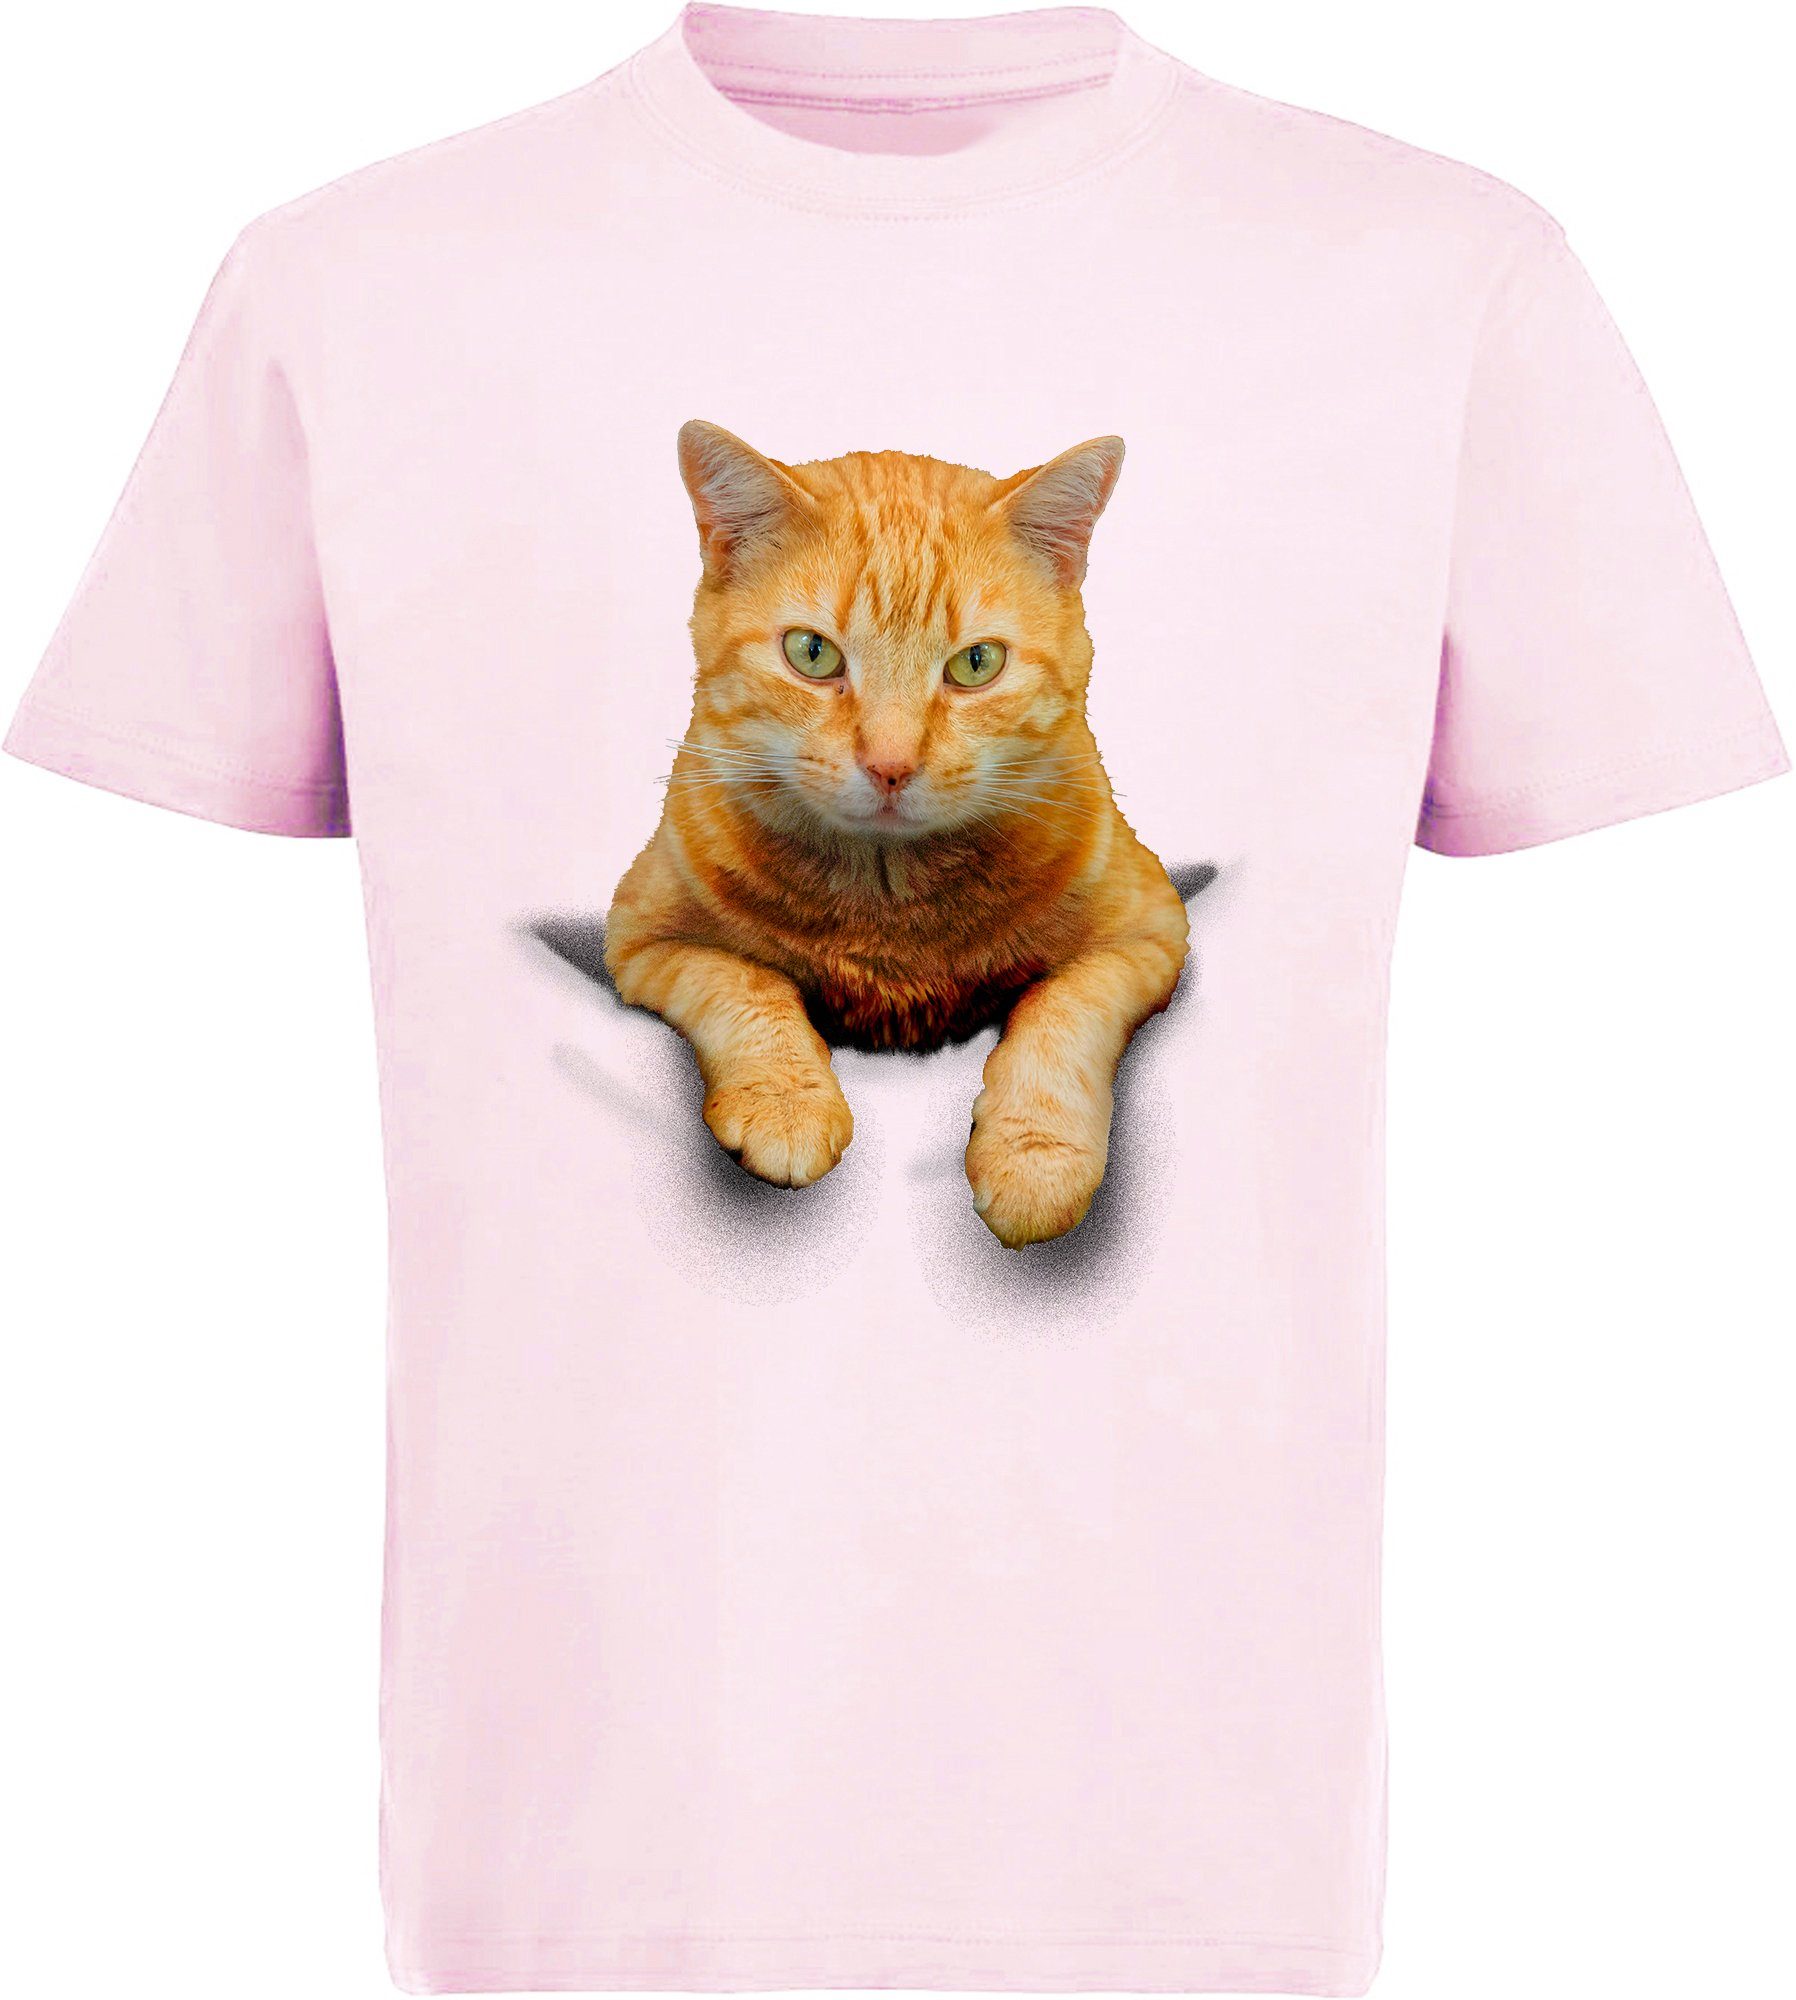 MyDesign24 Print-Shirt bedrucktes Mädchen T-Shirt Katze in der Tasche Baumwollshirt mit Katze, weiß, schwarz, rot, rosa, i109 | T-Shirts